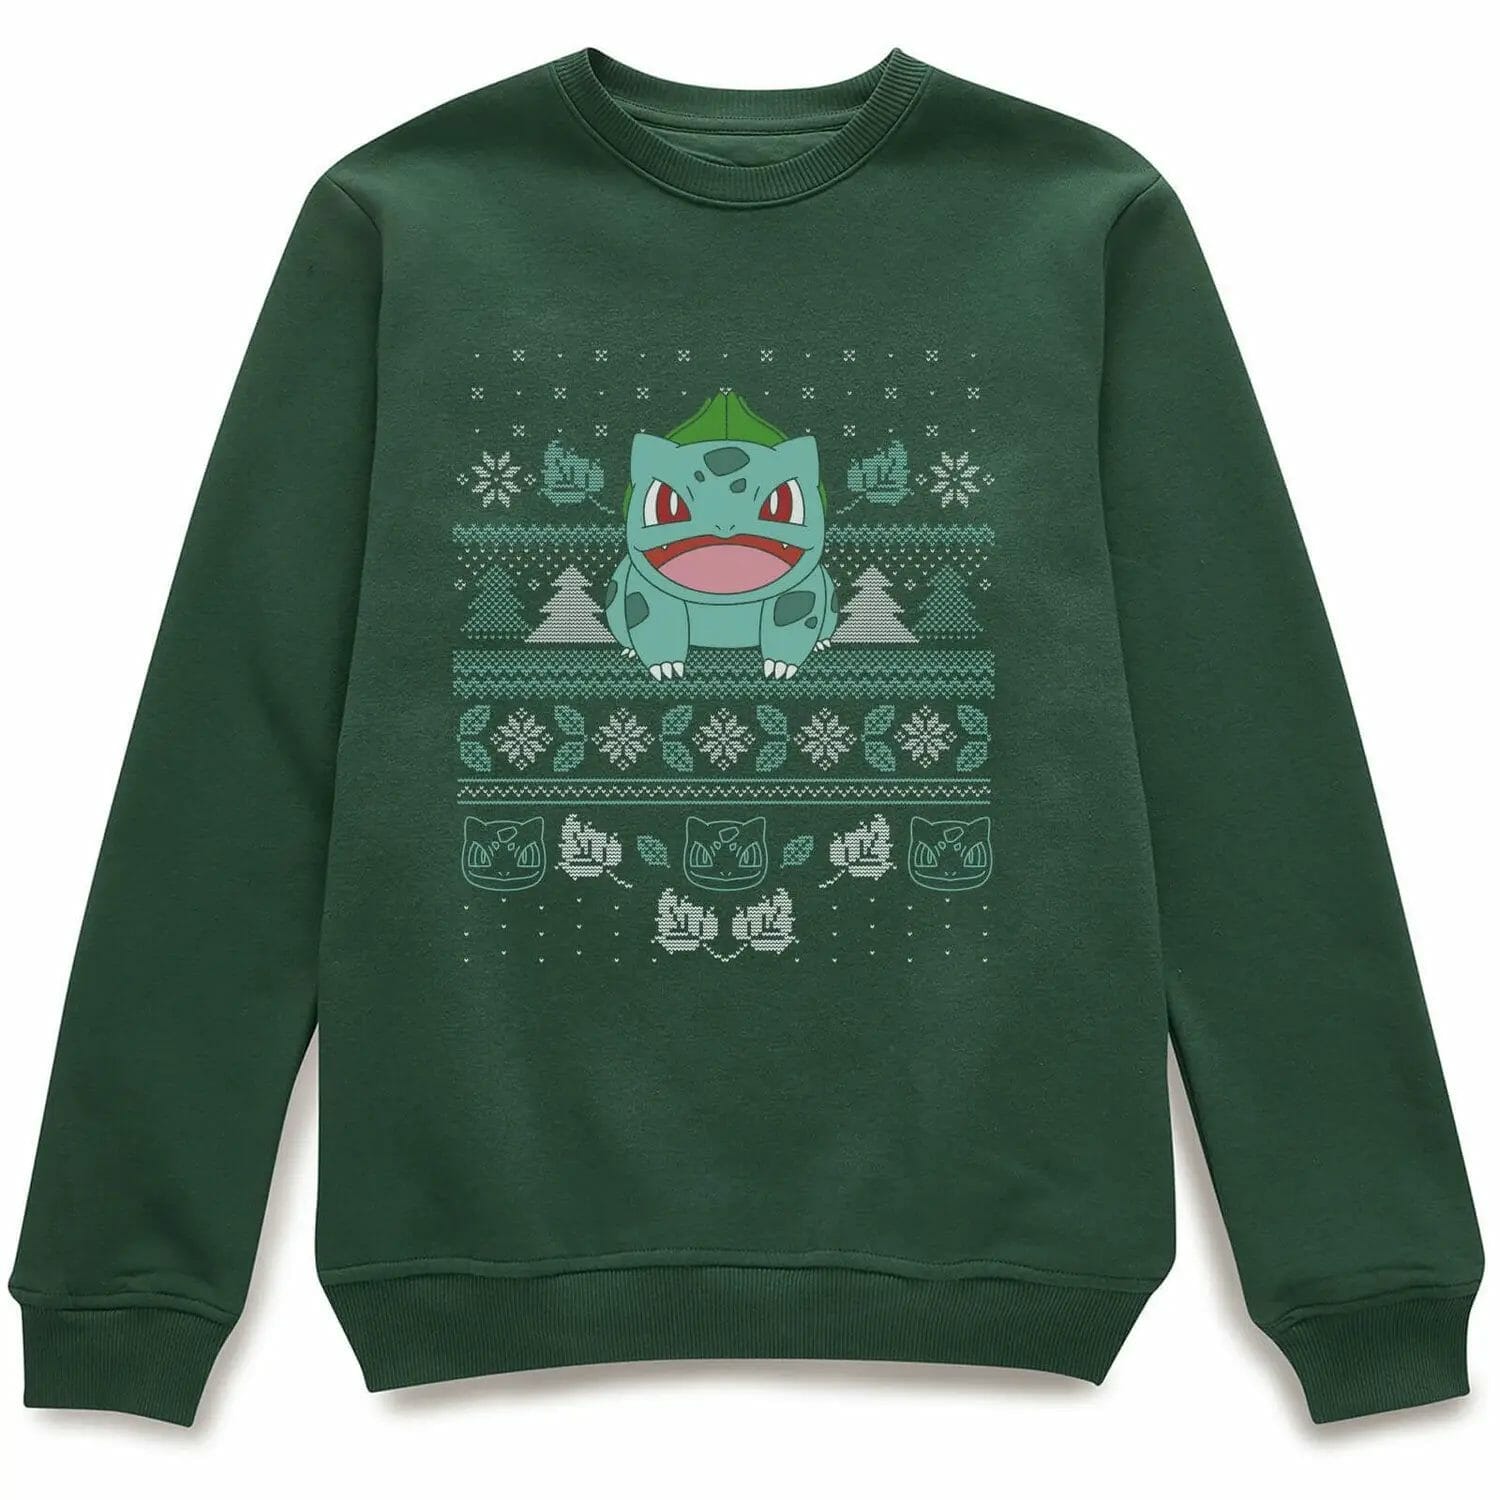 Green bulbasaur sweater